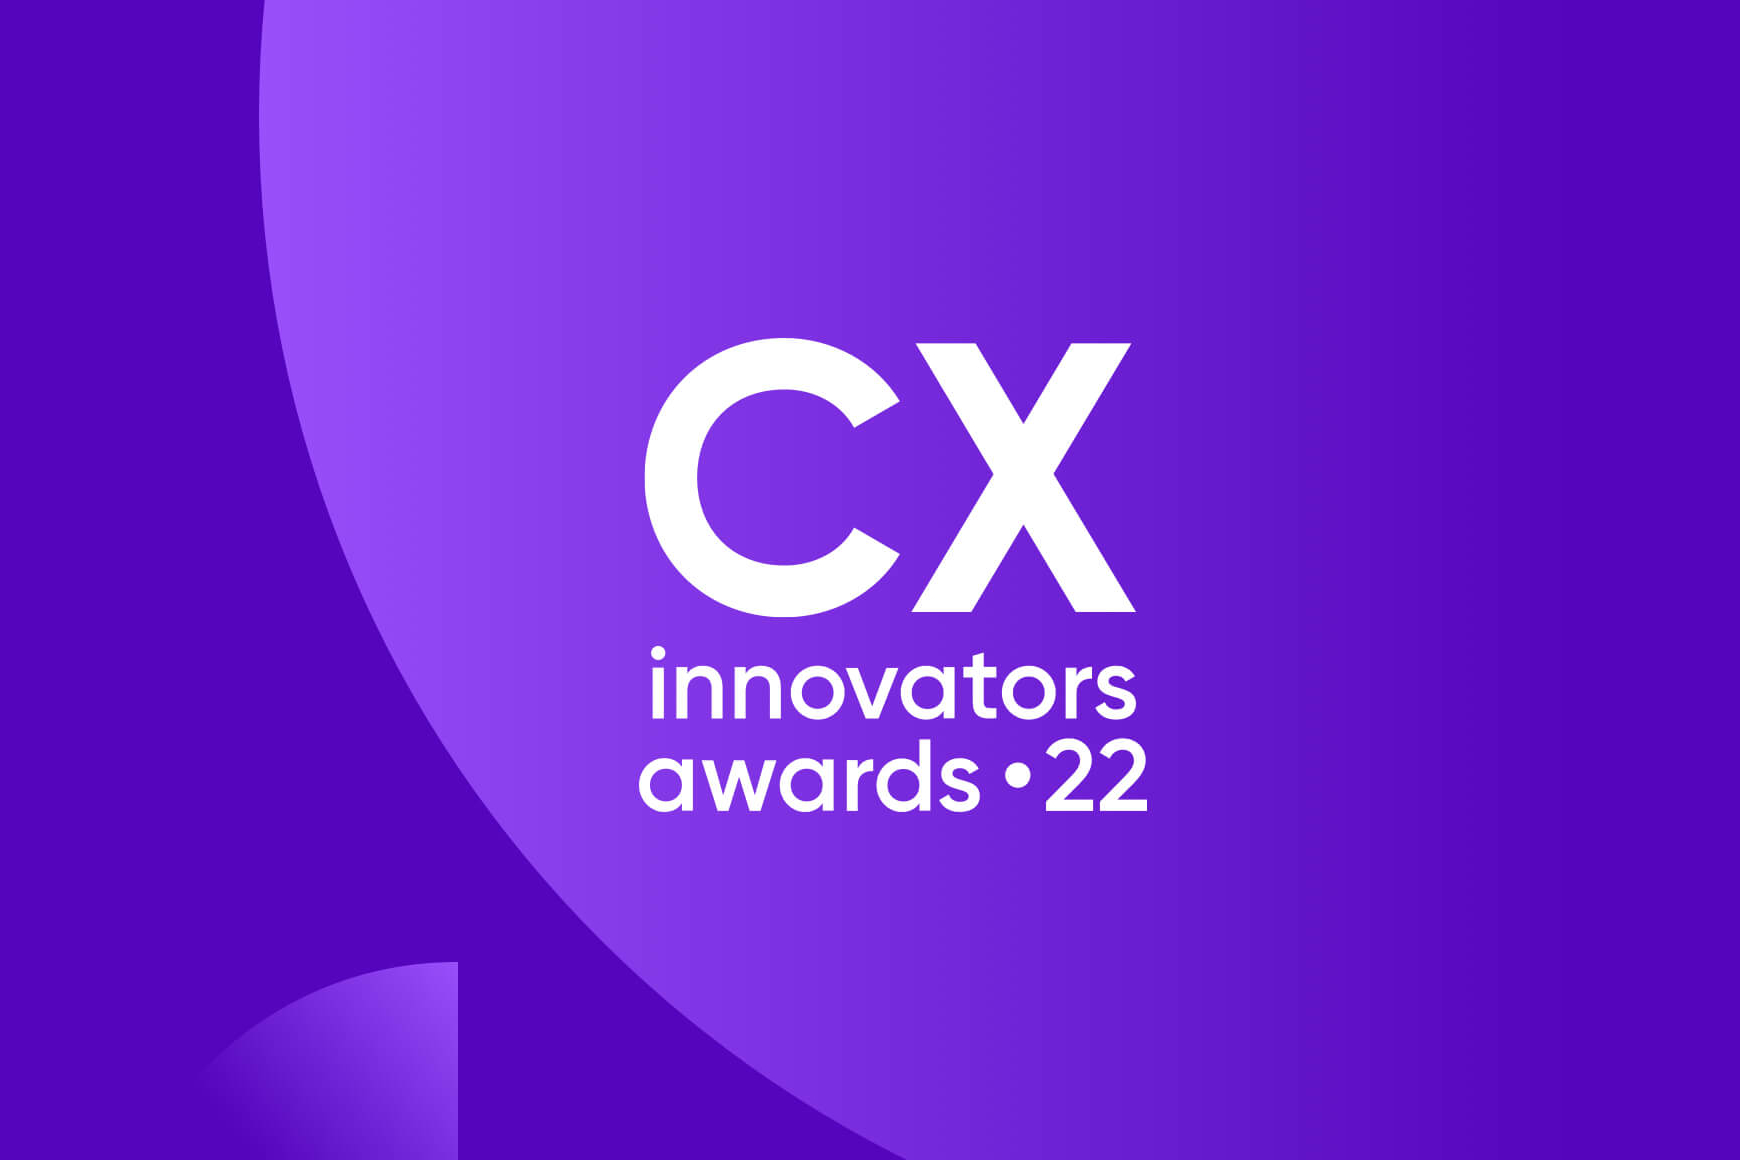 Erfahren Sie, wie CX-Innovatoren einen besseren Weg finden, den Kunden in den Mittelpunkt zu rücken.